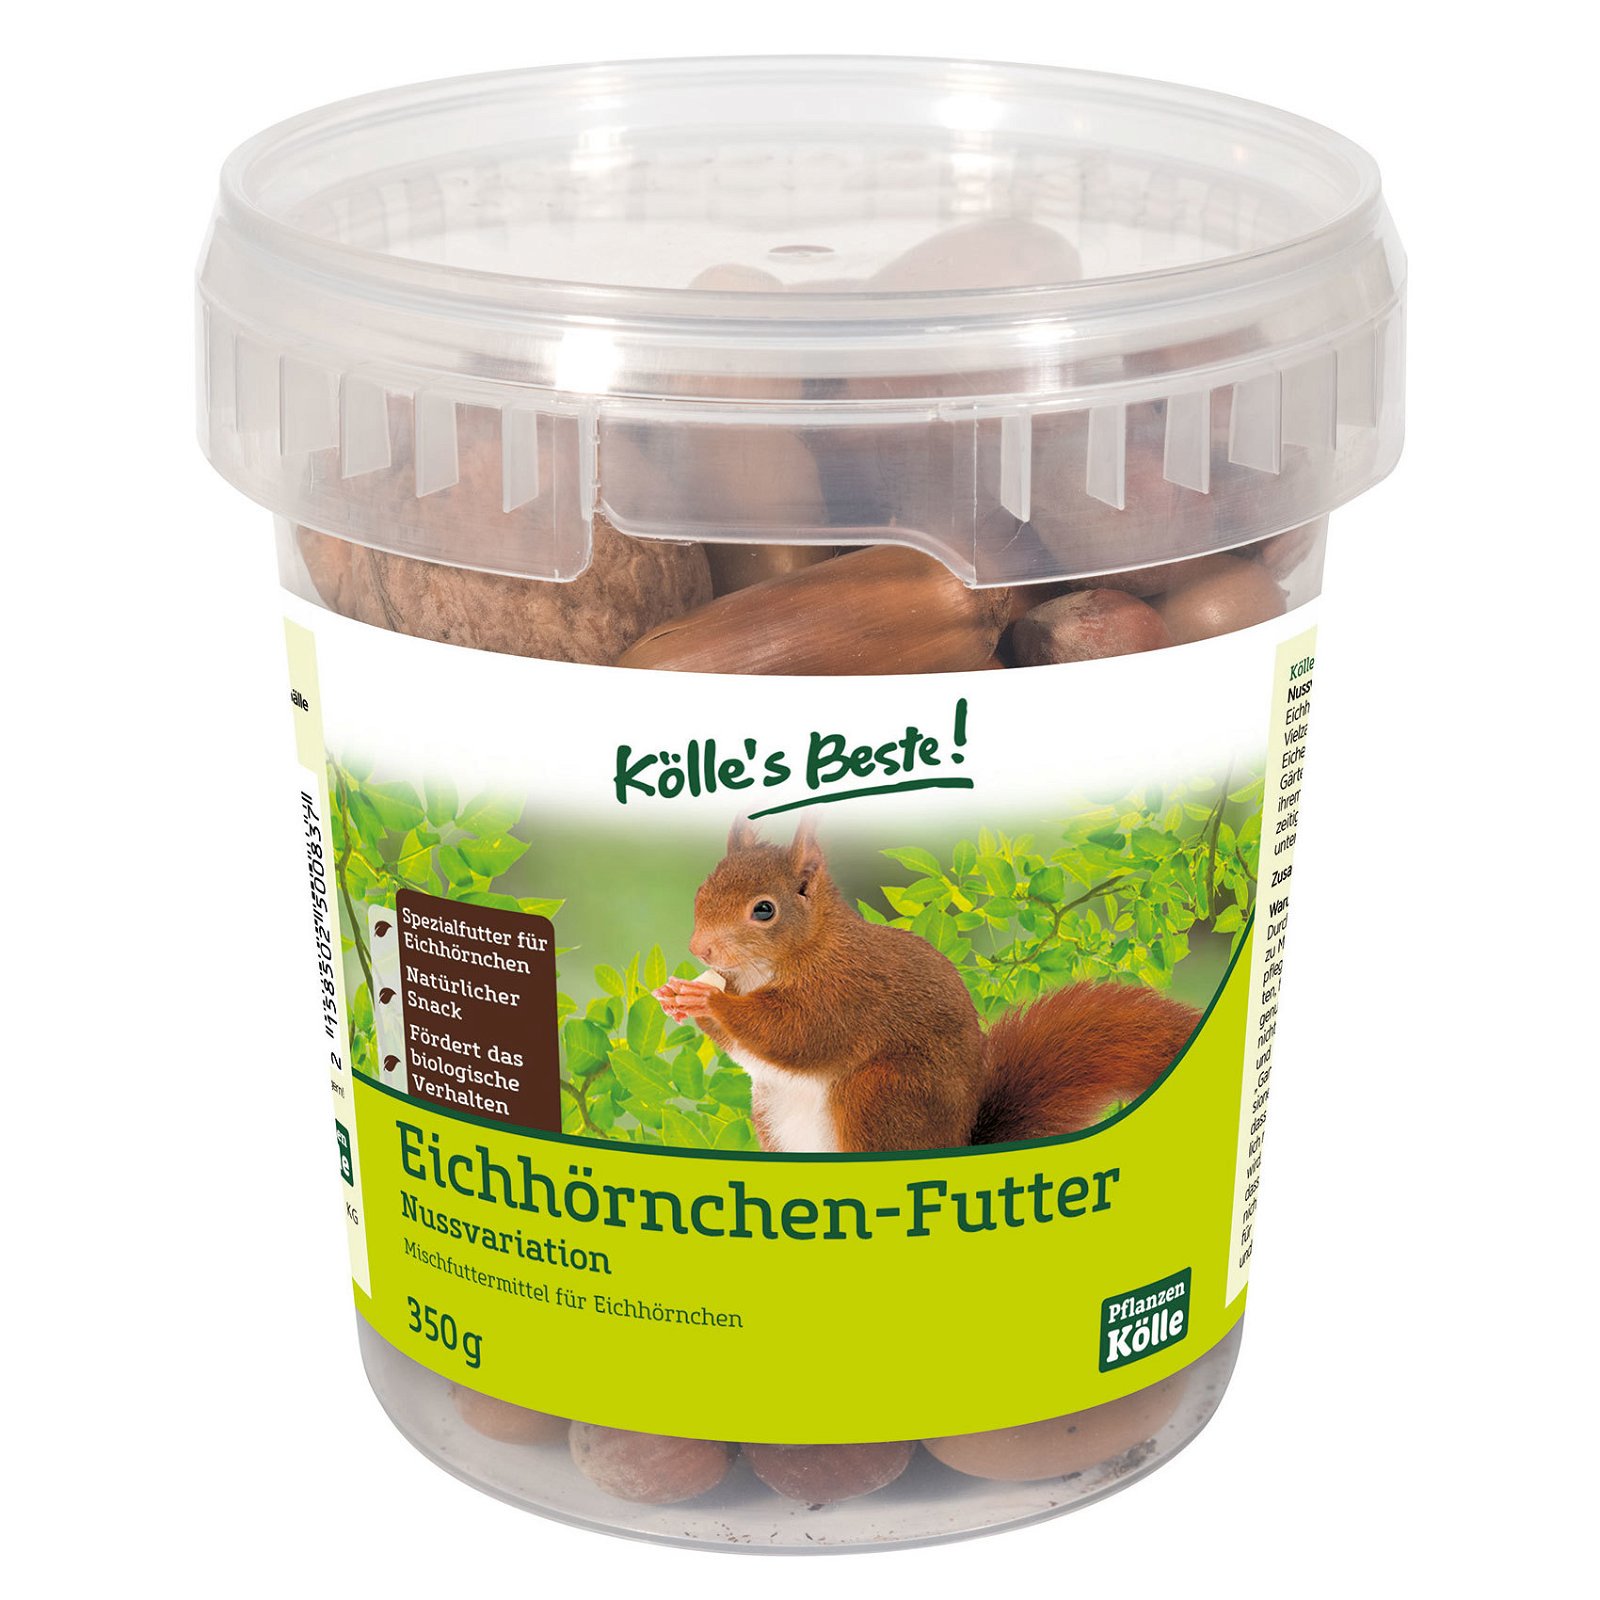 Kölle's Beste Eichhörnchenfutter - Nussvariation, 350g